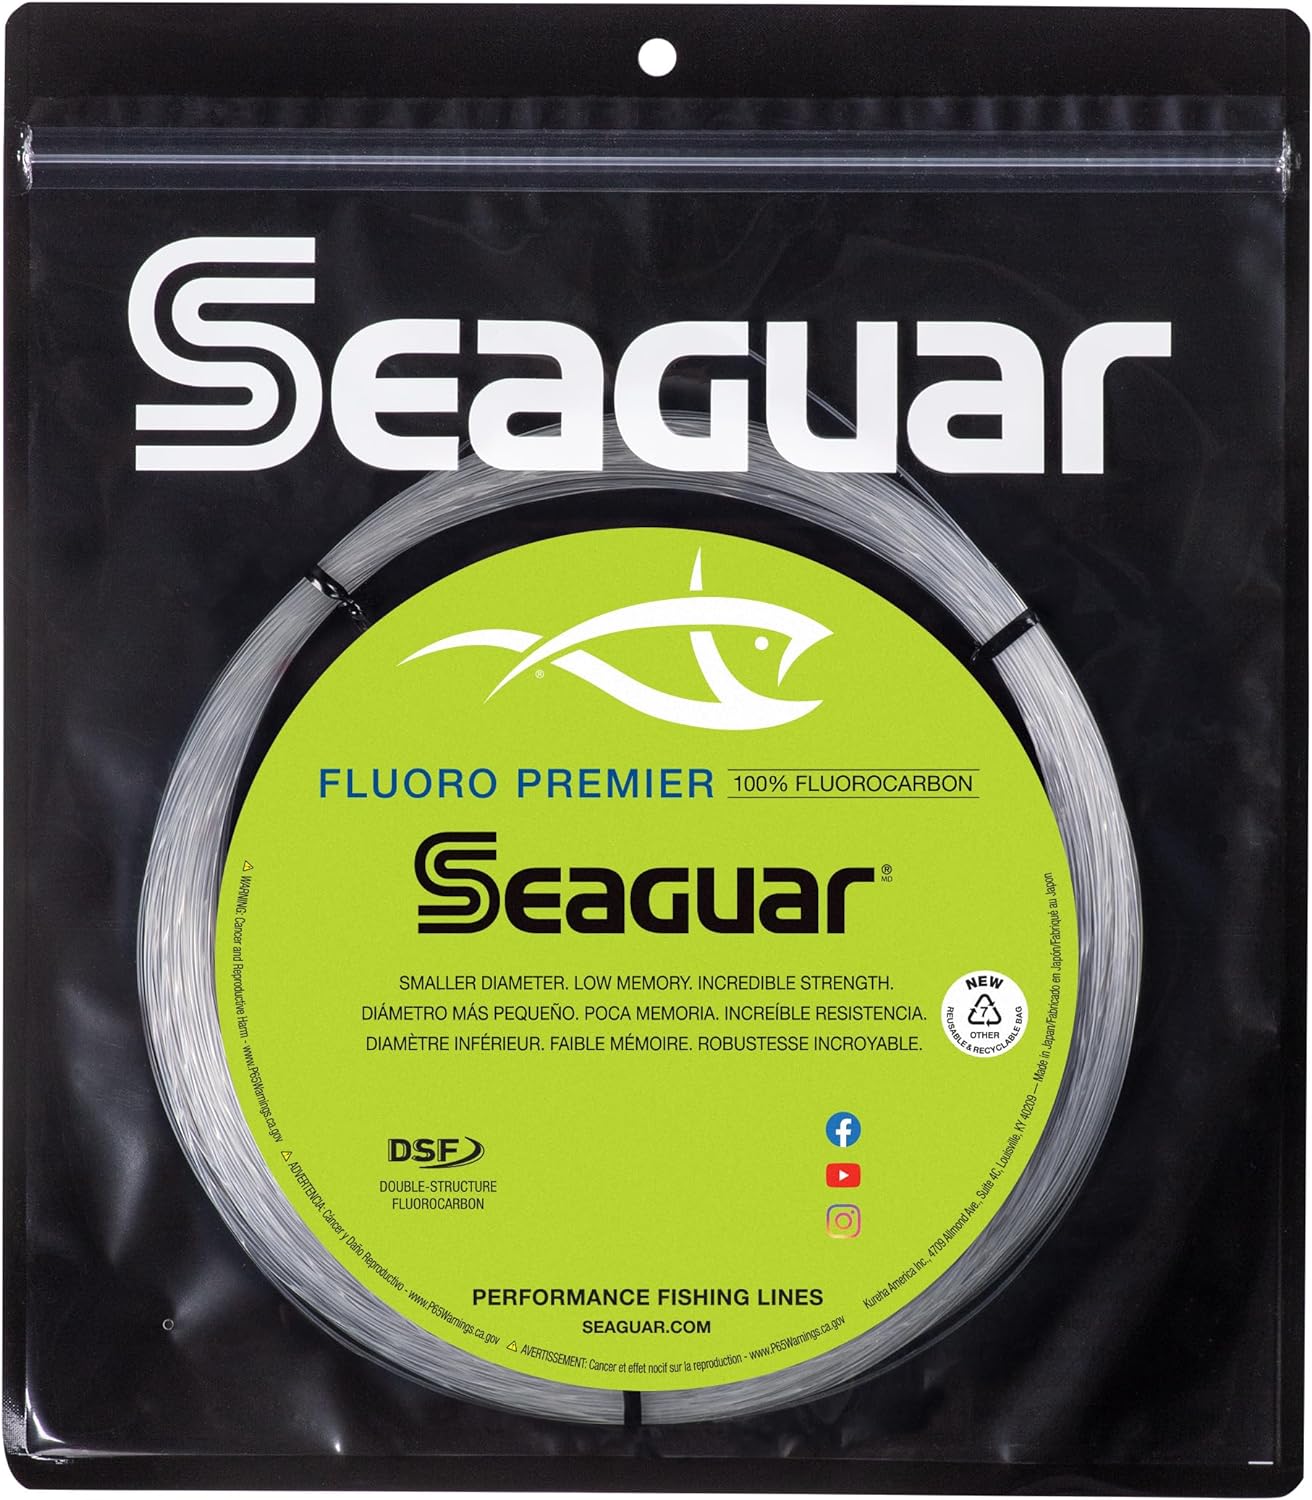 Seaguar Fluorocarbon Premier Big Game Leader 130lb 110 Yards